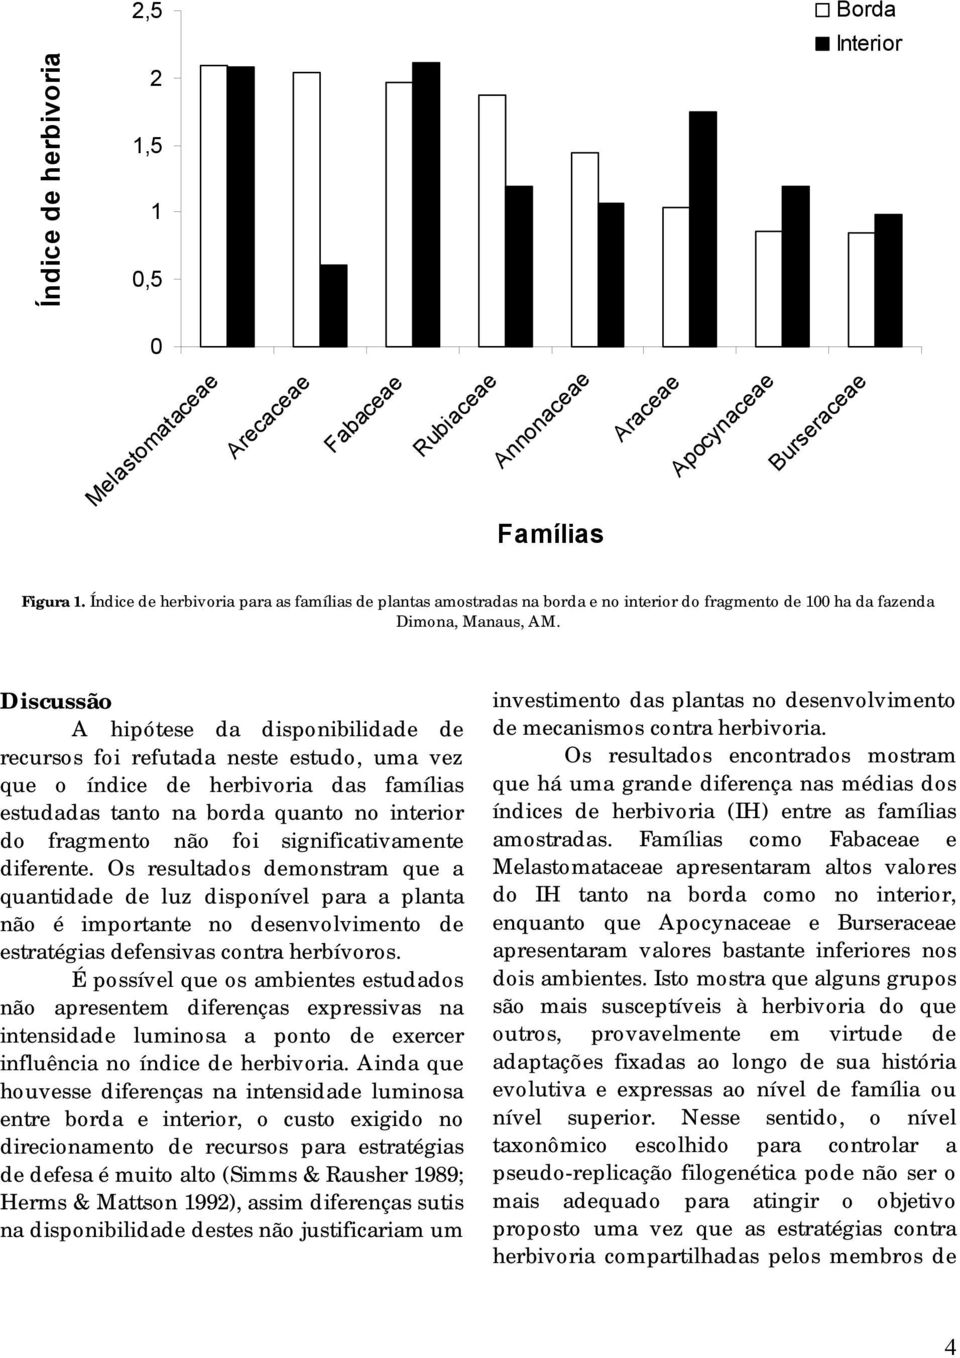 Discussão A hipótese da disponibilidade de recursos foi refutada neste estudo, uma vez que o índice de herbivoria das famílias estudadas tanto na borda quanto no interior do fragmento não foi